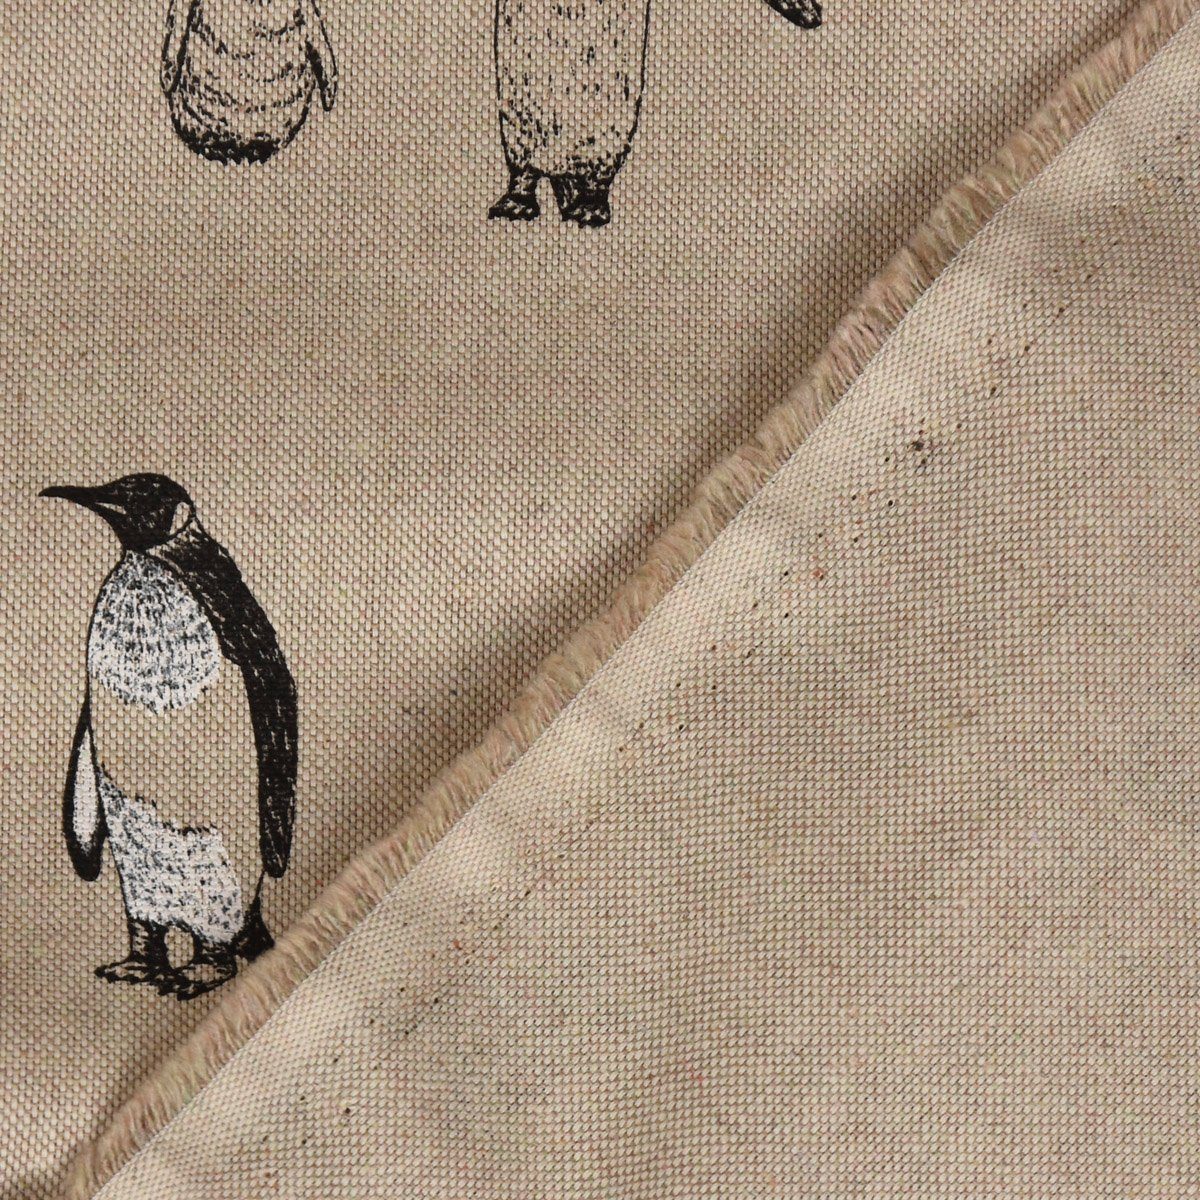 SCHÖNER LEBEN. Tischdecke SCHÖNER Tischdecke handmade Pinguine Pinguinfamilie natur LEBEN. schwarz